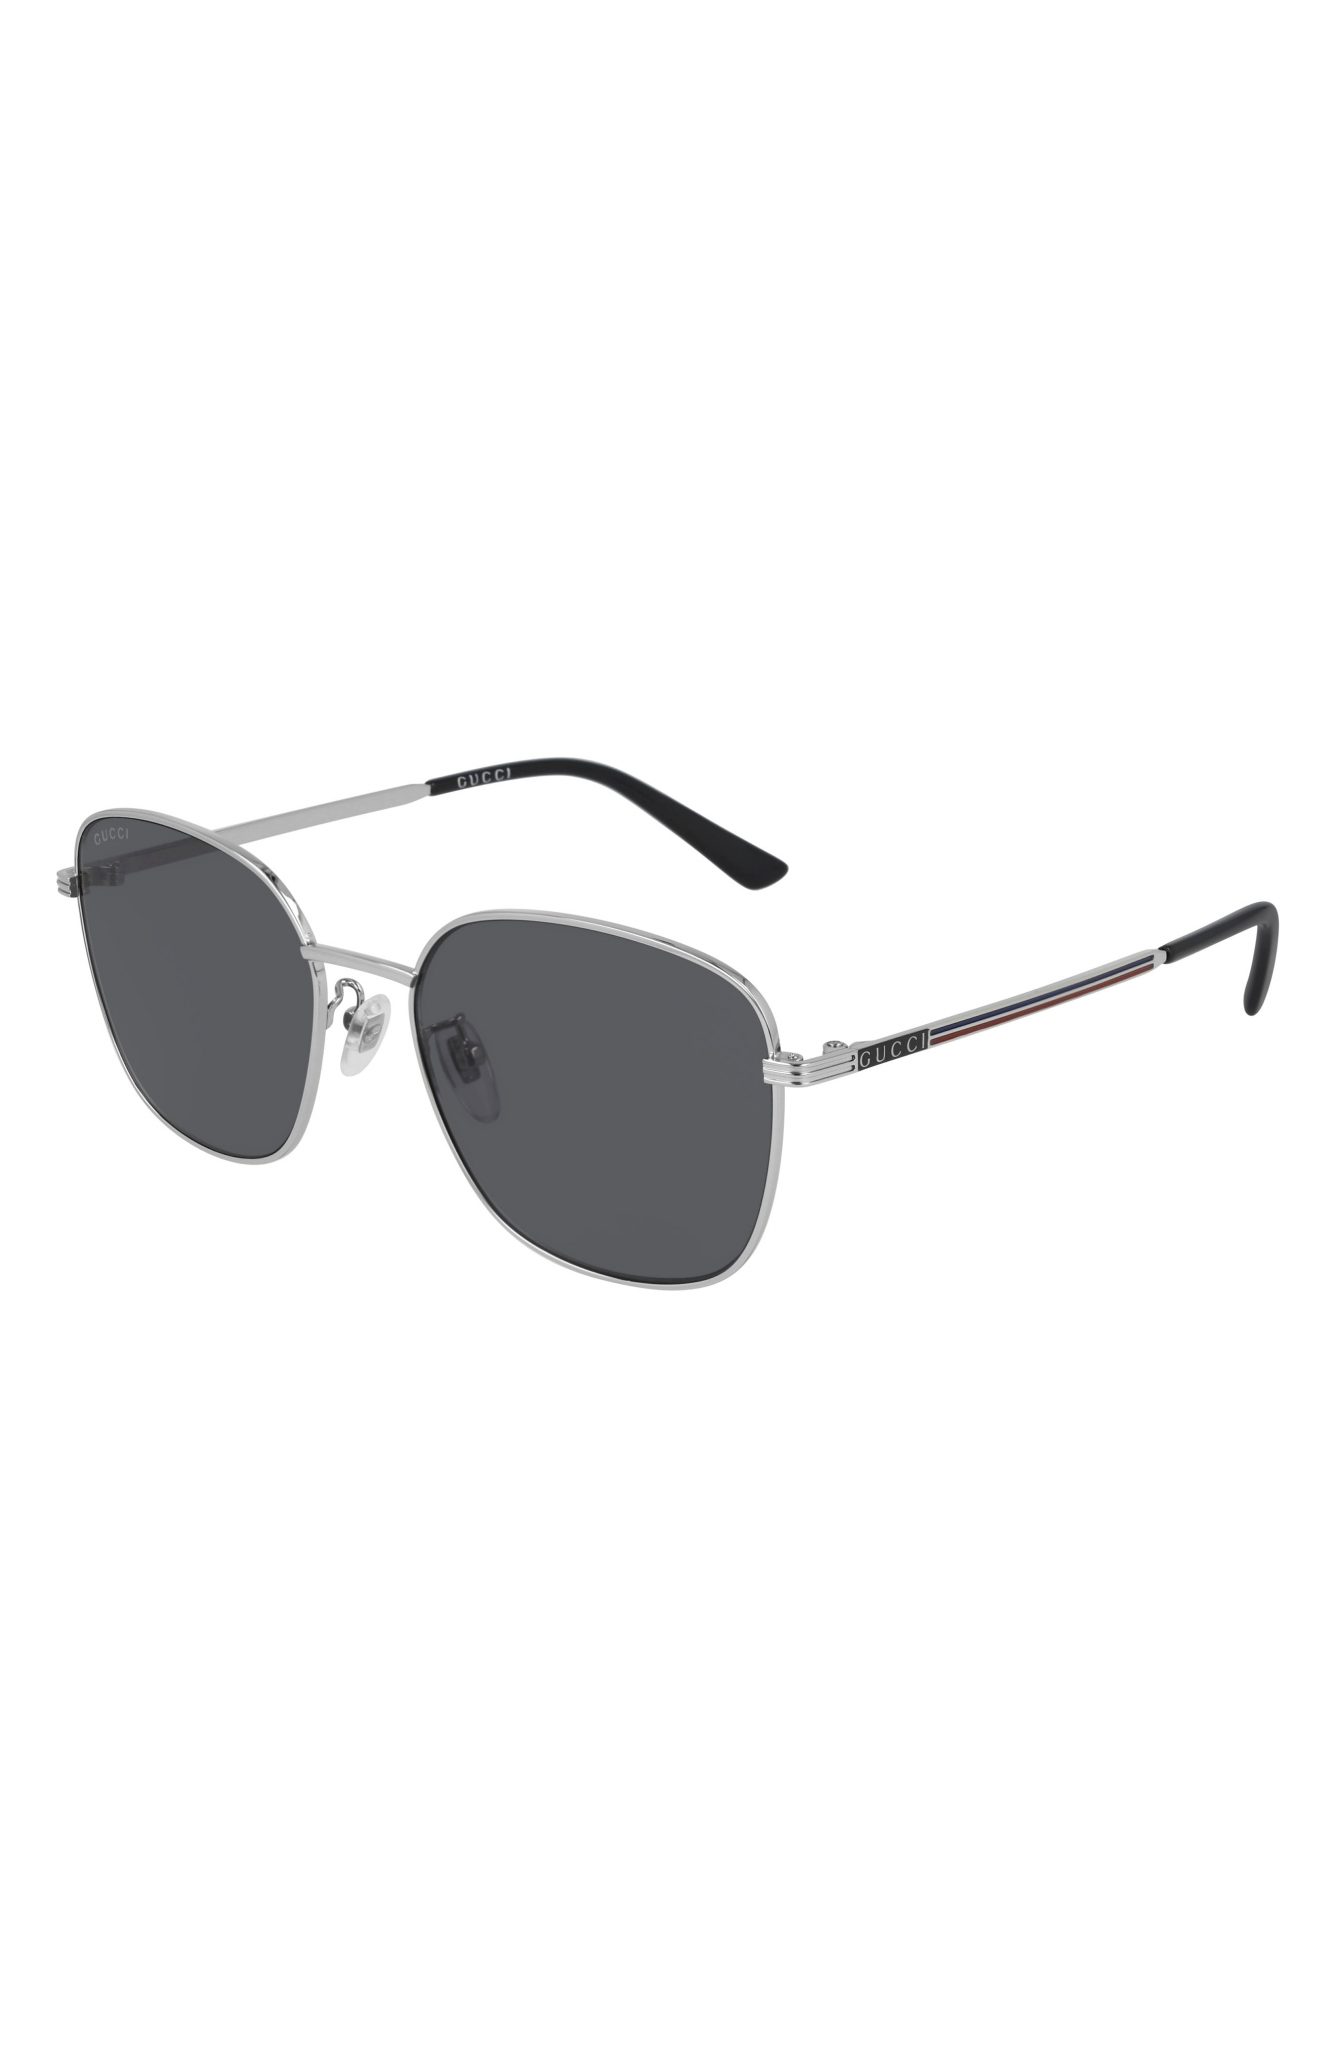 Men’s Gucci 57mm Square Sunglasses The Fashionisto